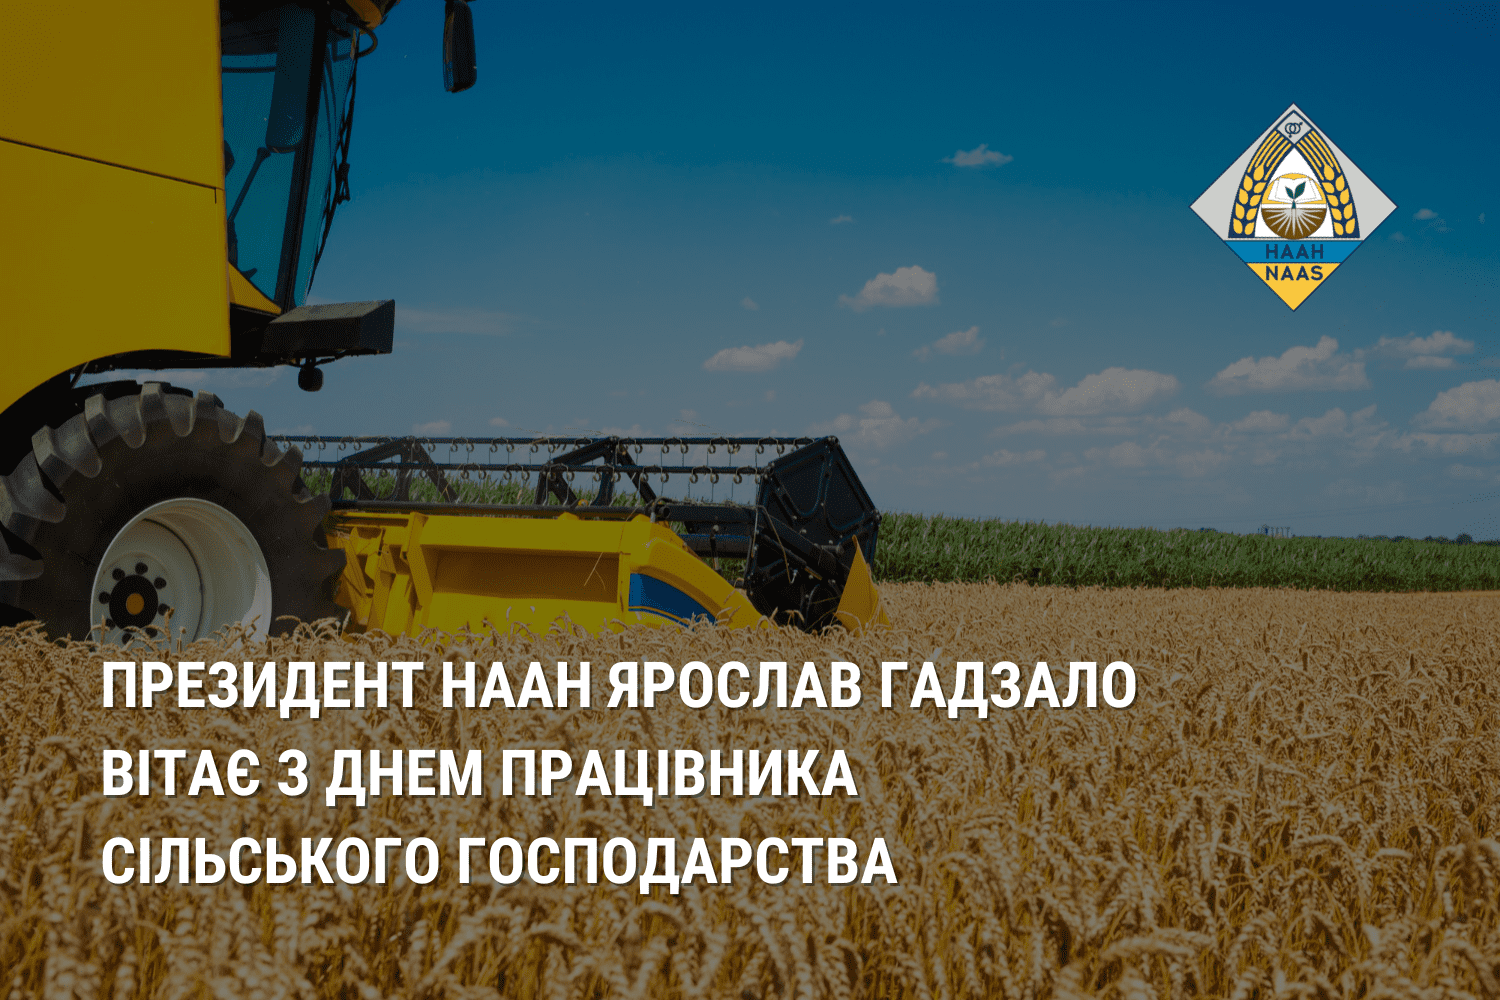 Президент НААН Ярослав Гадзало вітає з Днем працівника сільського господарства